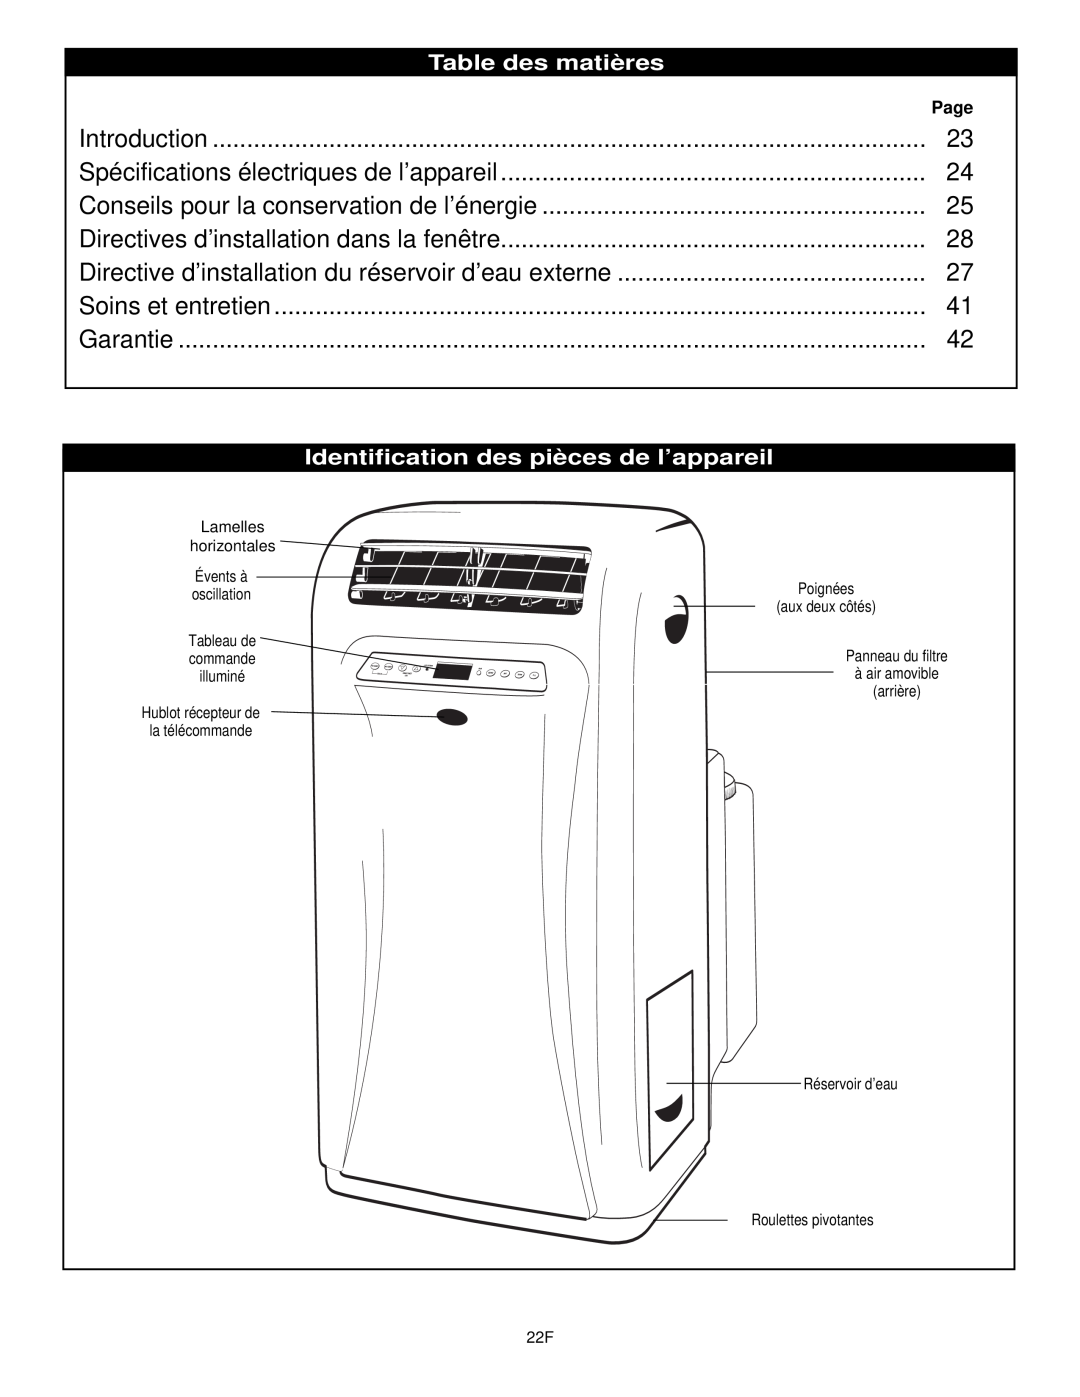 Danby DPAC10030 manual Table des matières, Identification des pièces de l’appareil, Lamelles horizontales Évents à 